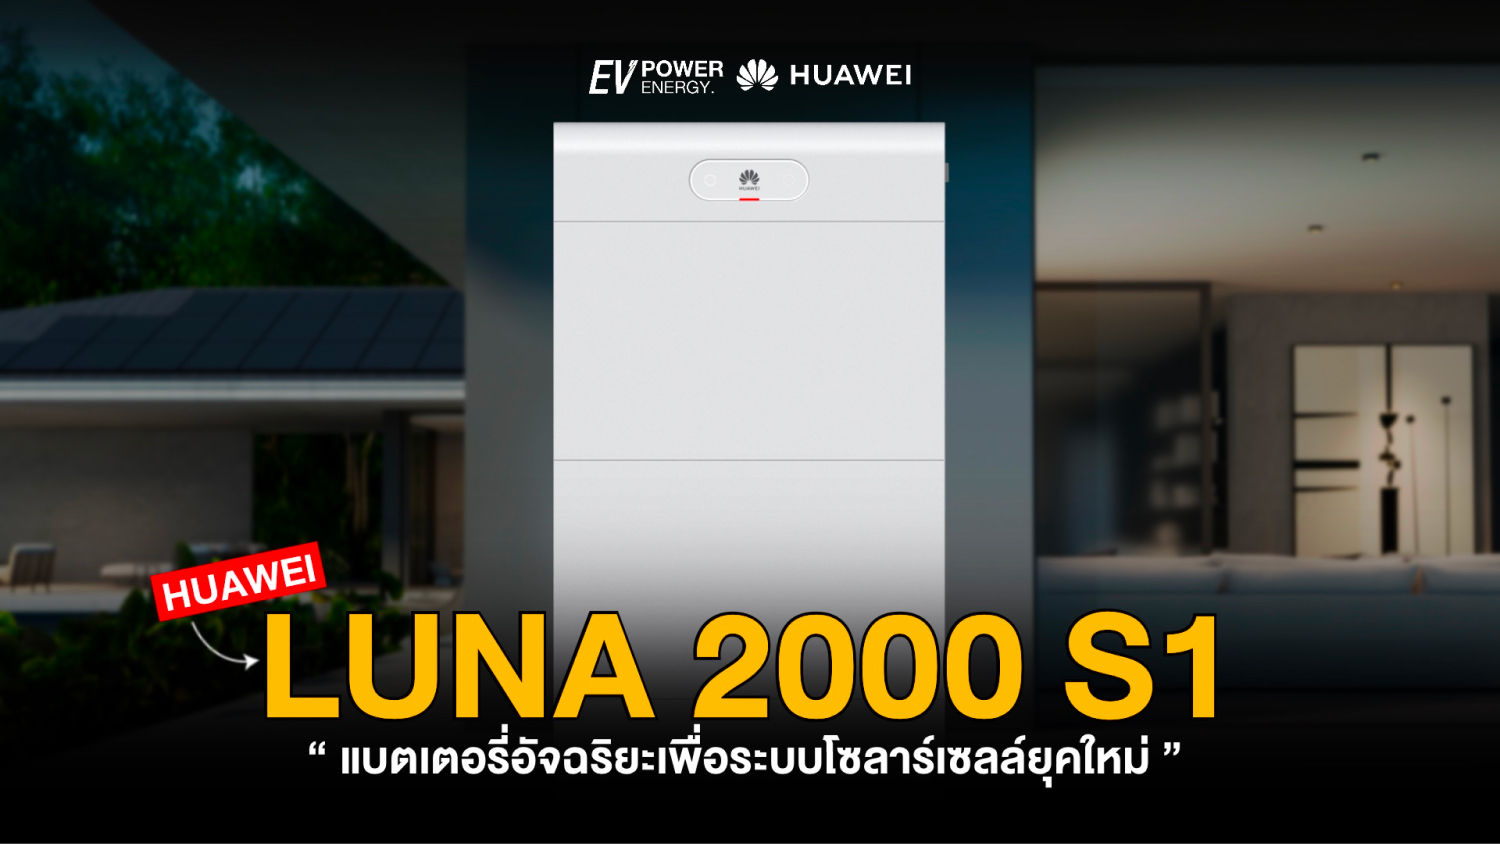 Huawei LUNA 2000 S1 แบตเตอรี่อัจฉริยะเพื่อระบบโซล่าเซลล์ยุคใหม่